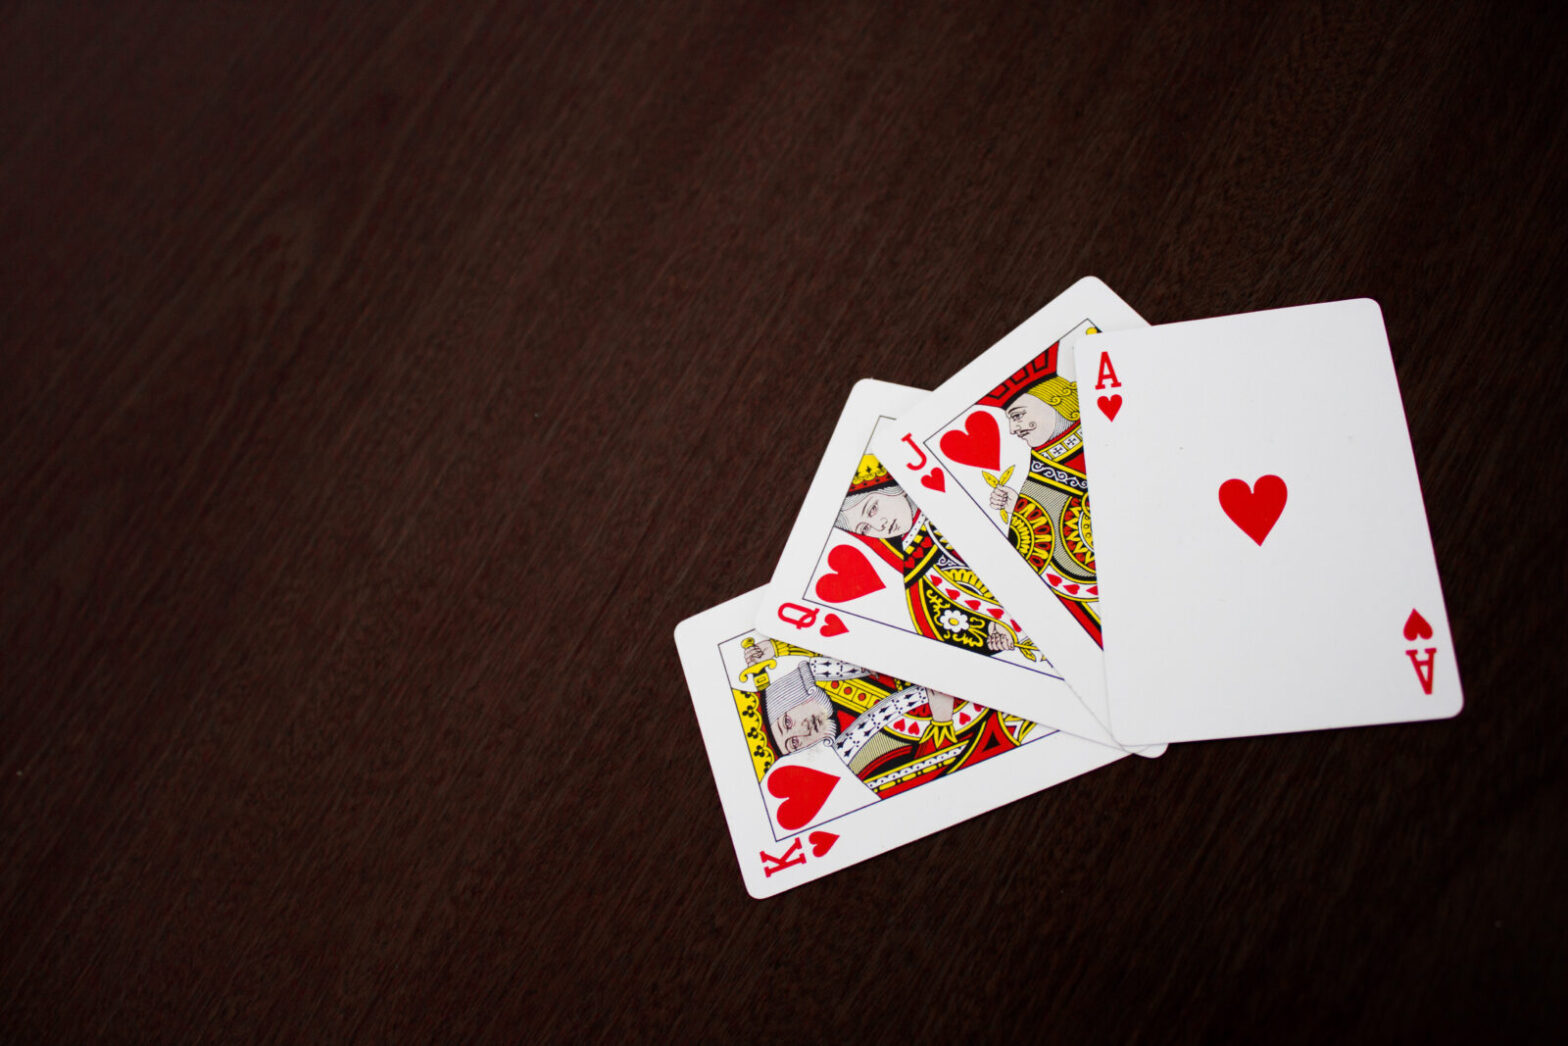 Descubra o incrível segredo do 21 - o jogo de cartas que vai te surpreender!